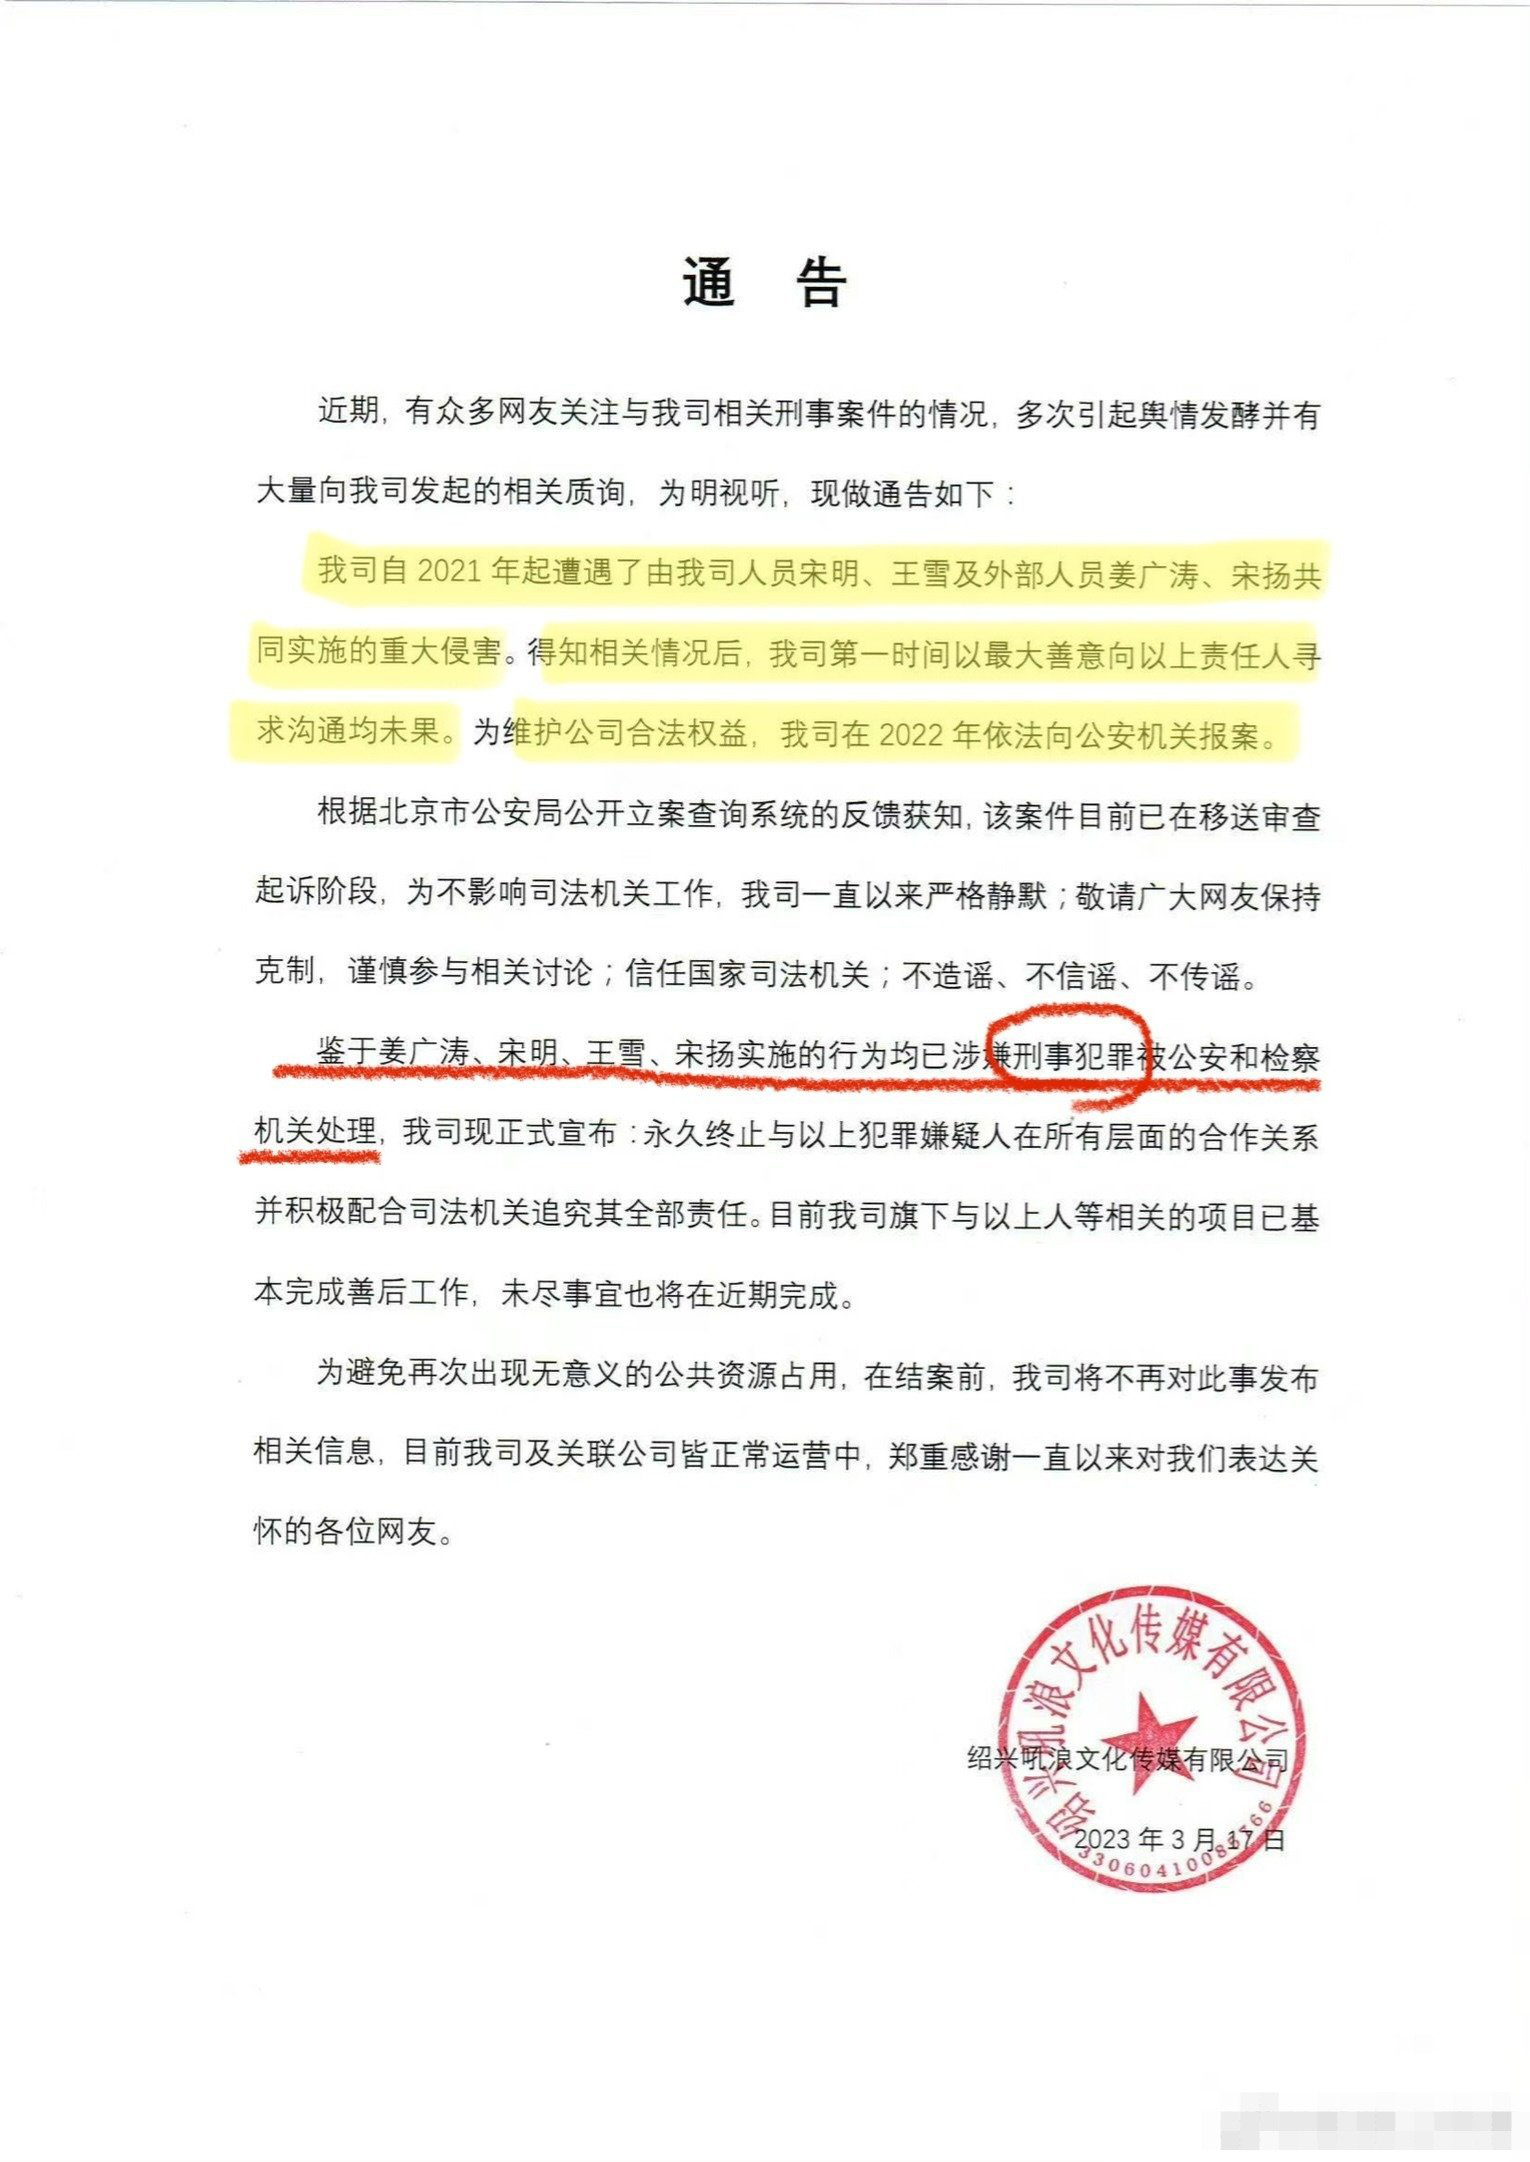 姜广涛涉嫌刑事犯罪 吼浪工作室发声明称已报案